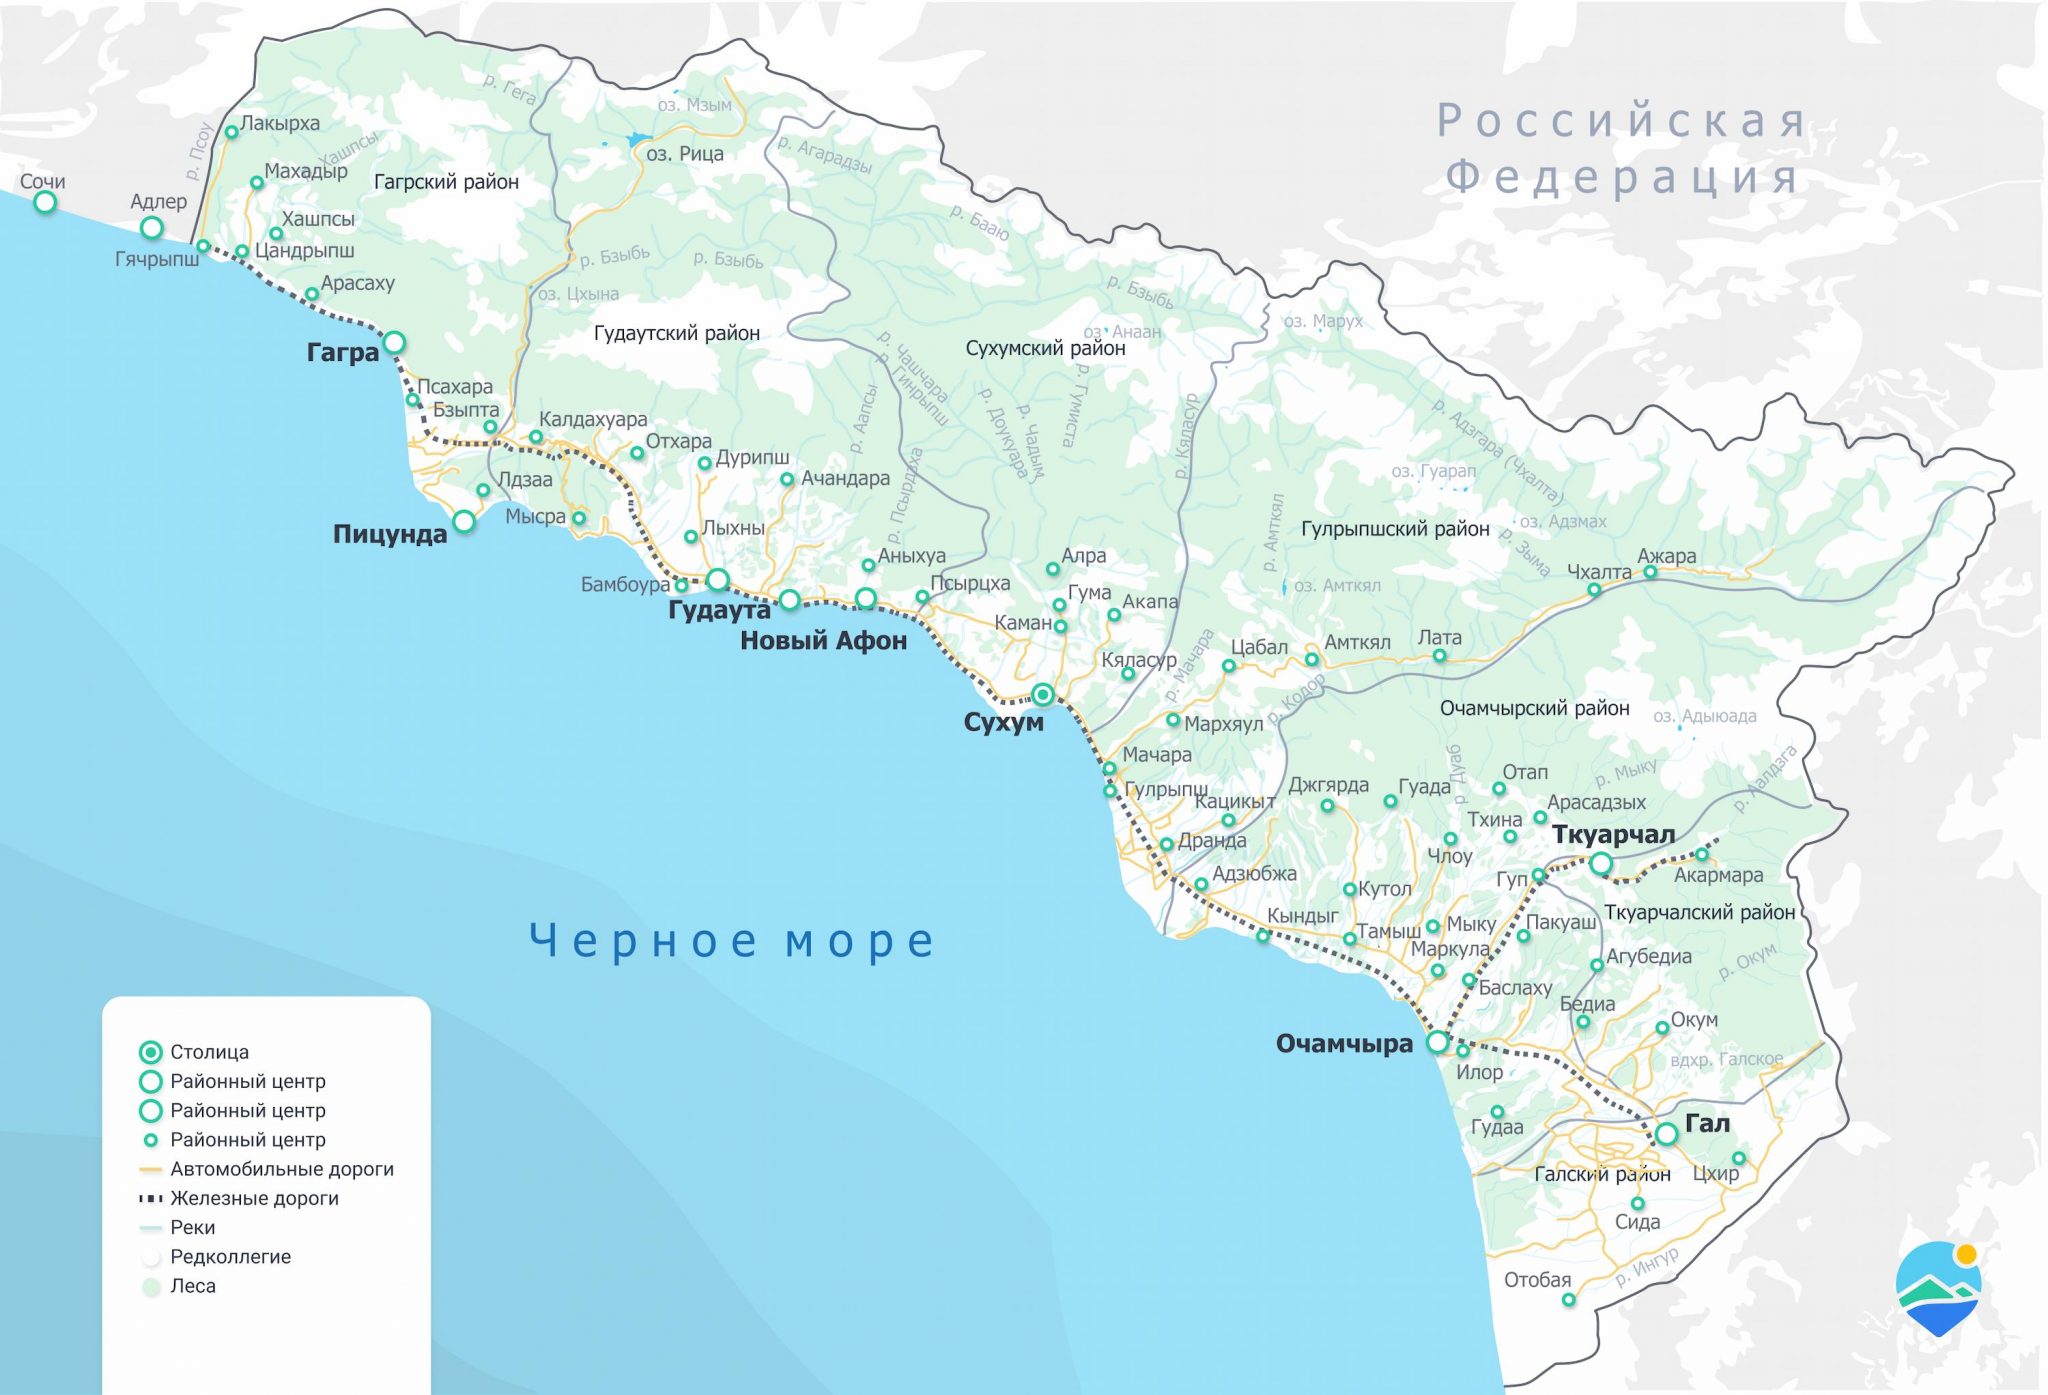 Абхазия карта подробная отдых - 92 фото